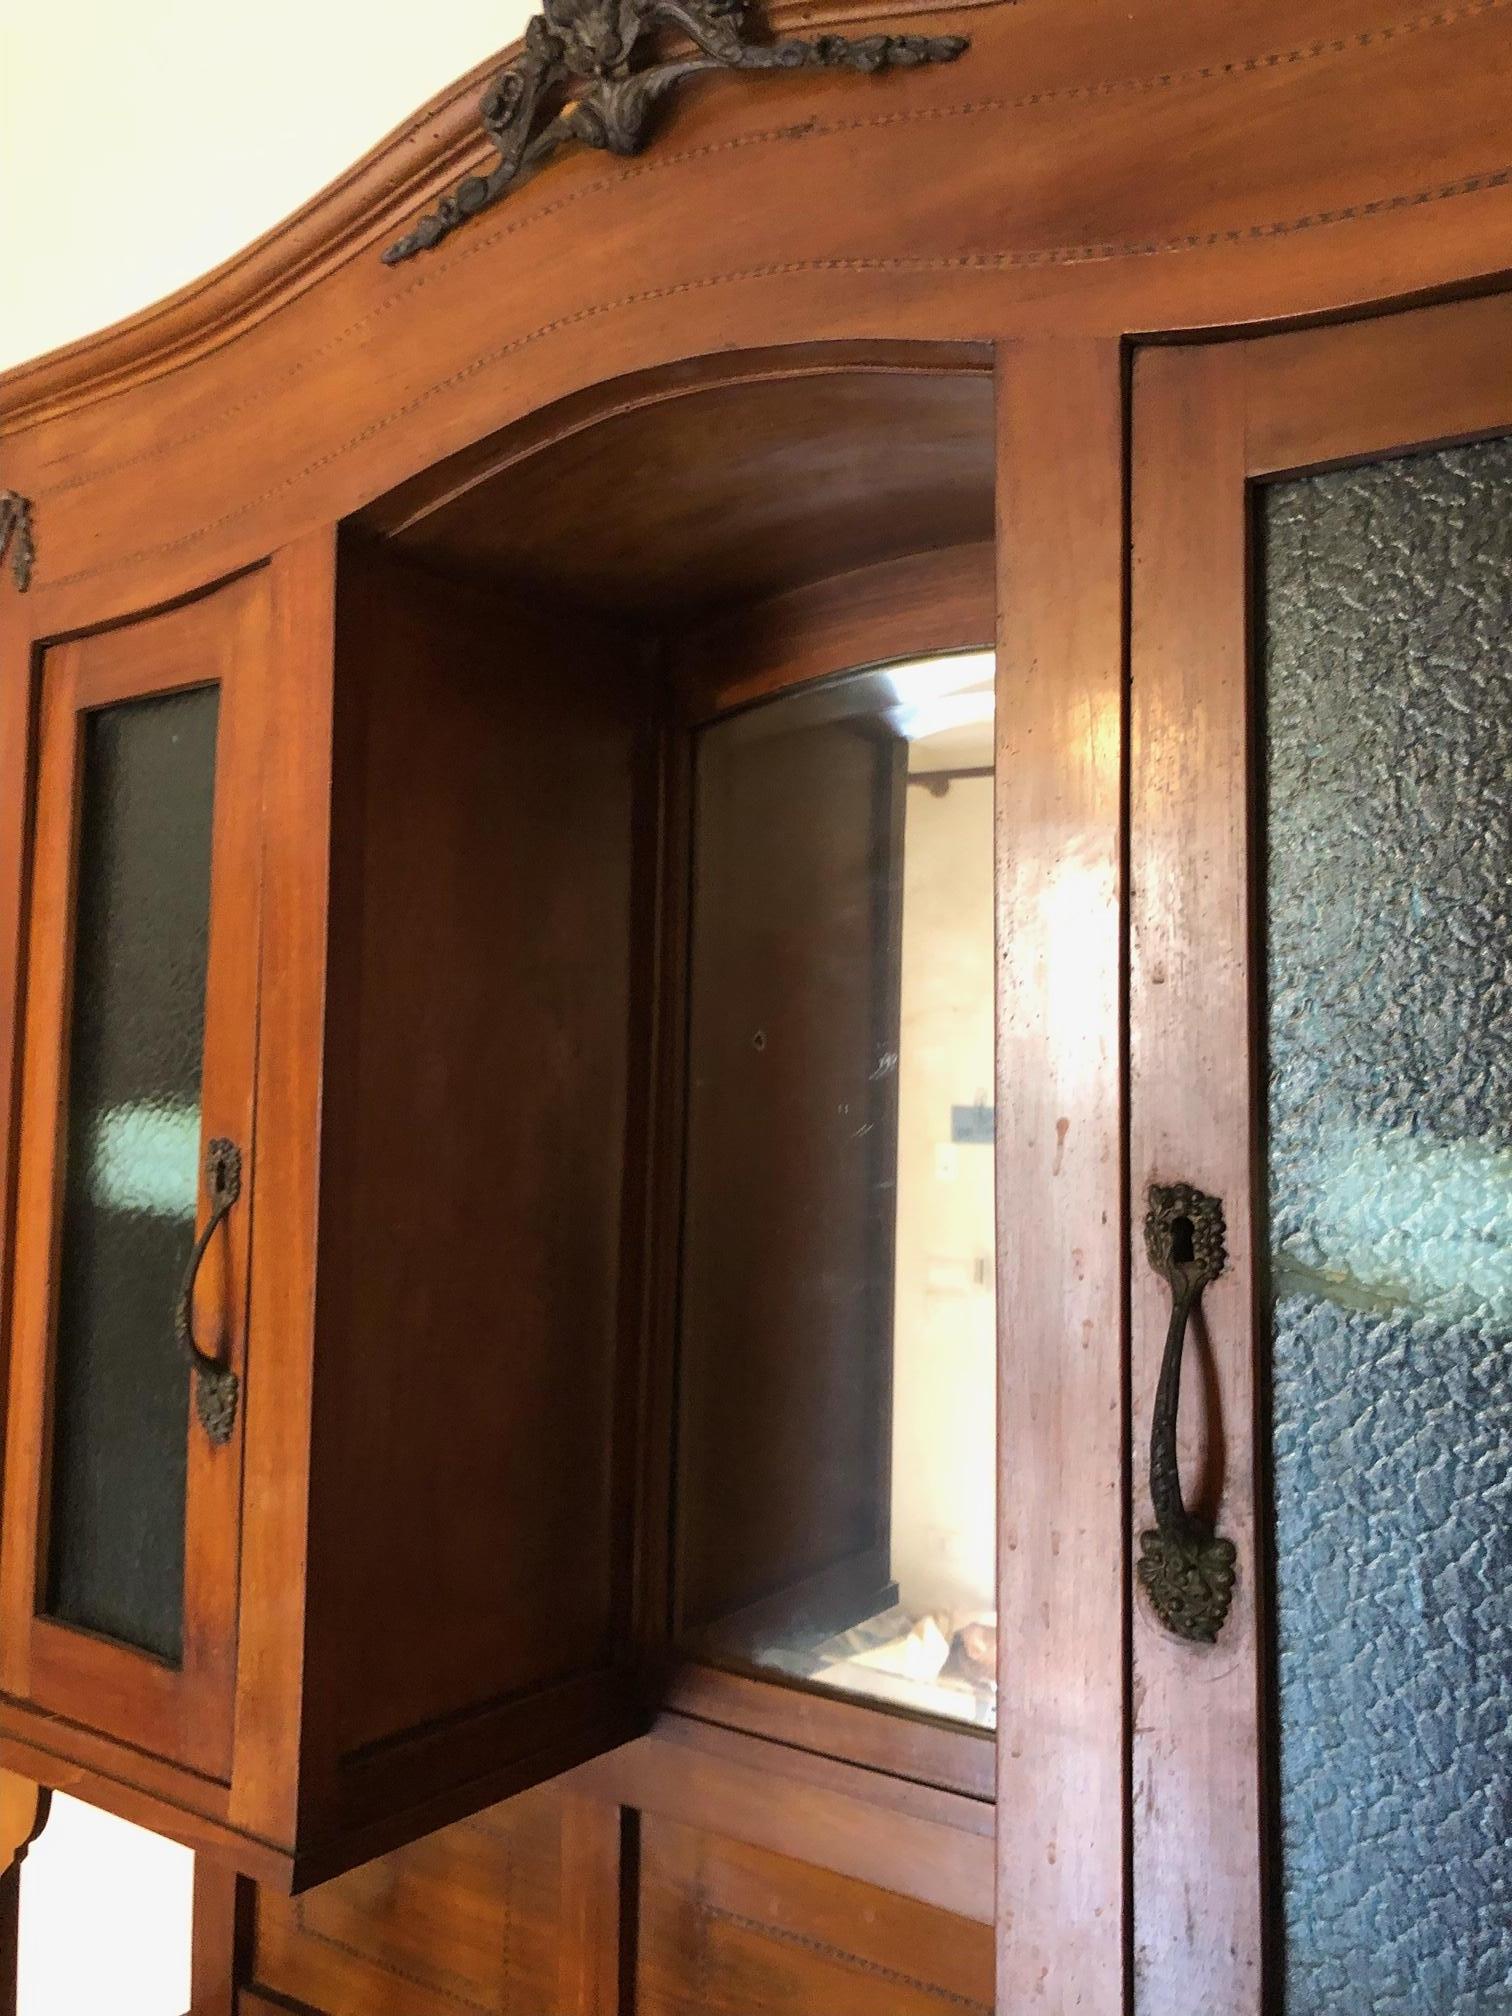 Cabinets vitrine italienne en noyer national en couleur naturelle style art déco. 
Le meuble est divisé en deux parties, la partie supérieure avec du verre et la partie inférieure avec des tiroirs et des portes avec une étagère interne.
Poignées